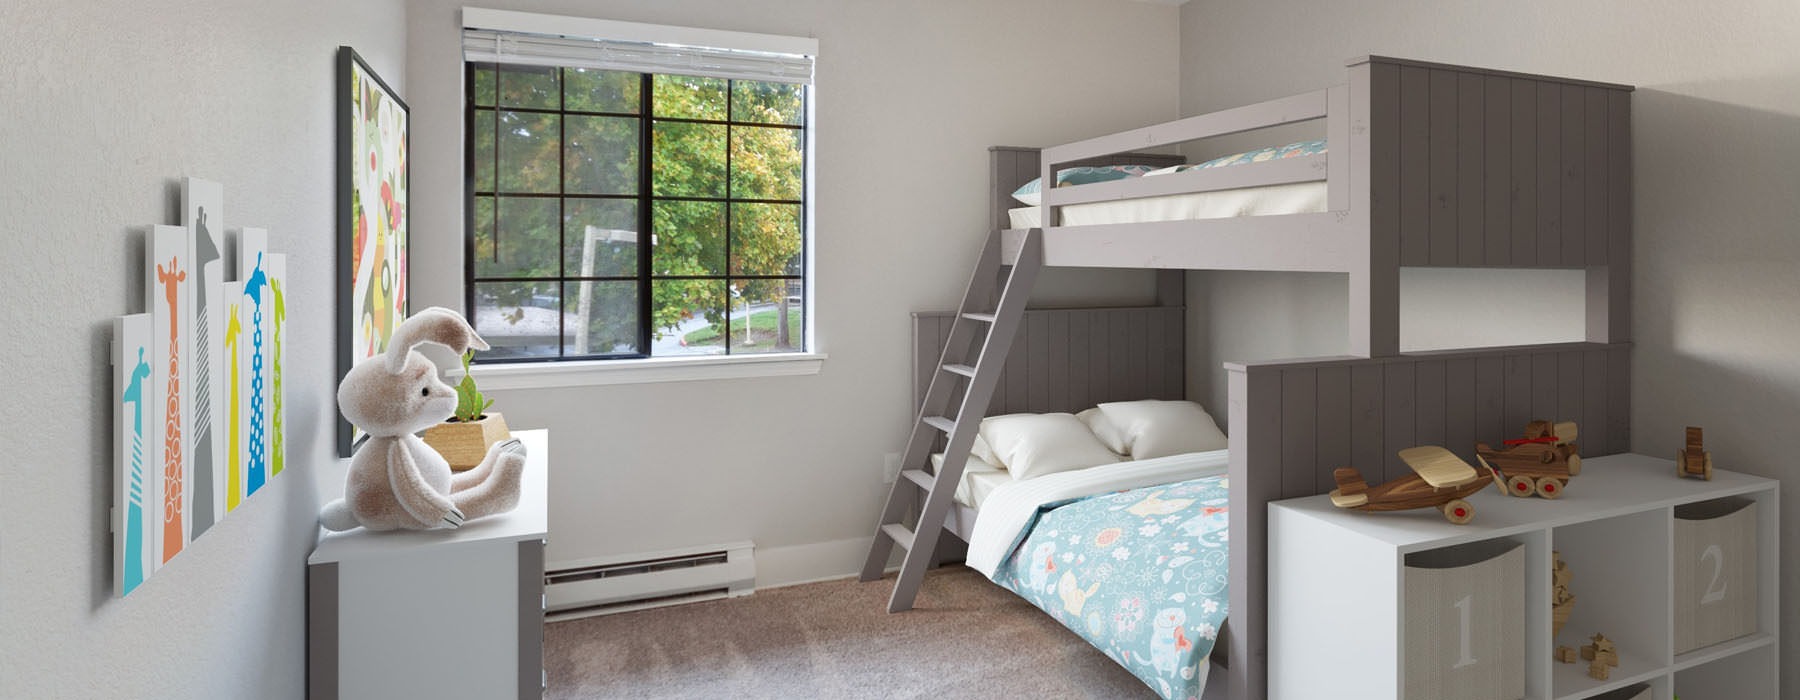 window in bedroom with bunk beds